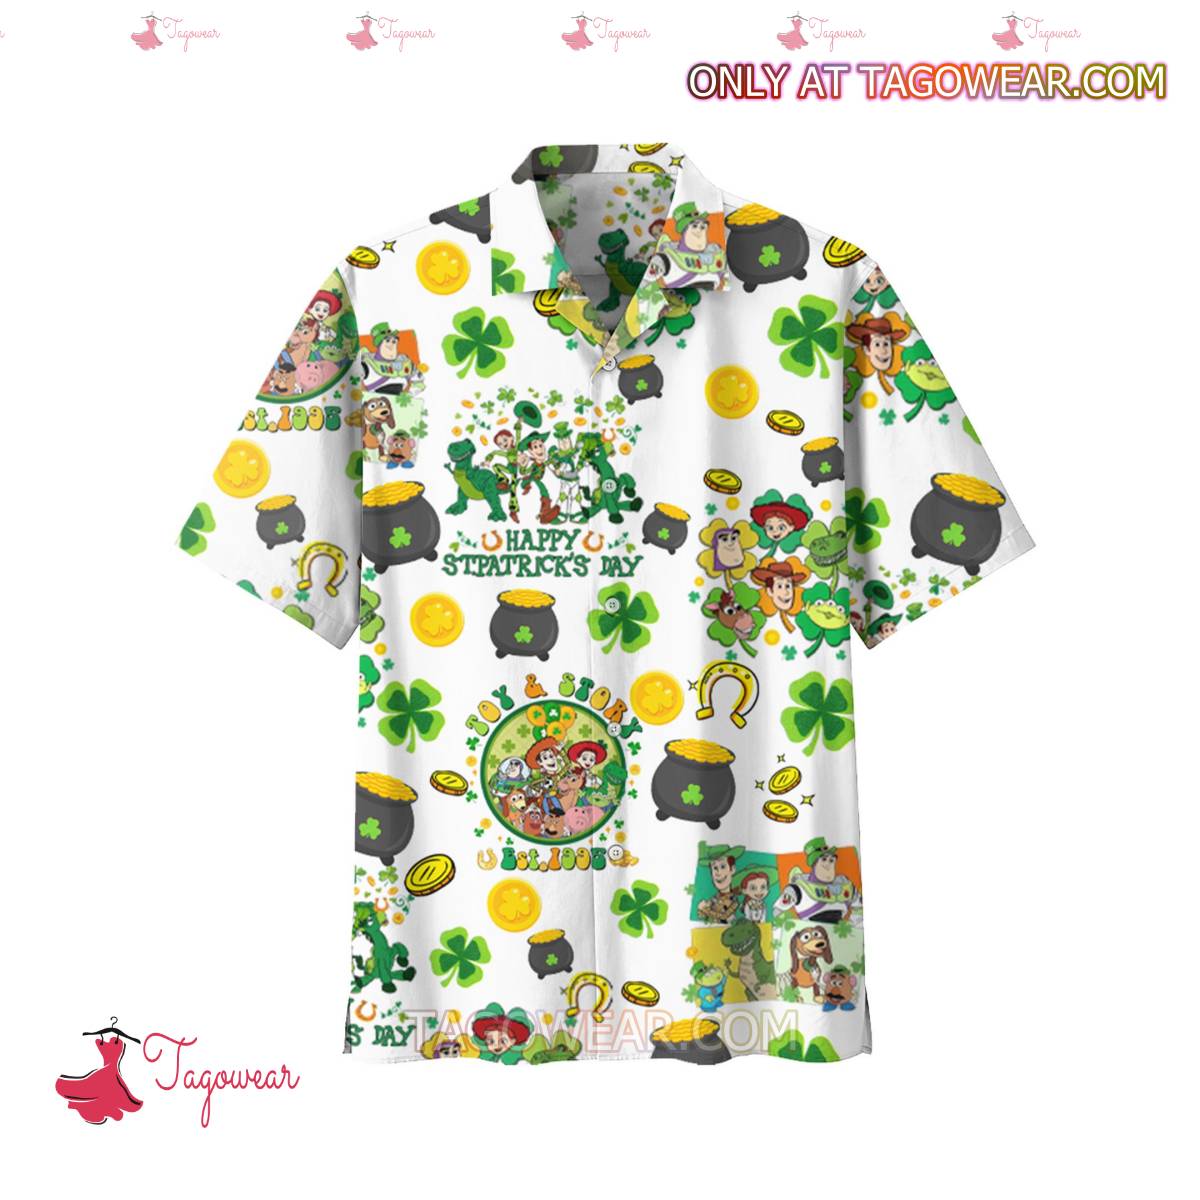 Toy Story Happy St. Patrick's Day Hawaiian Shirt a